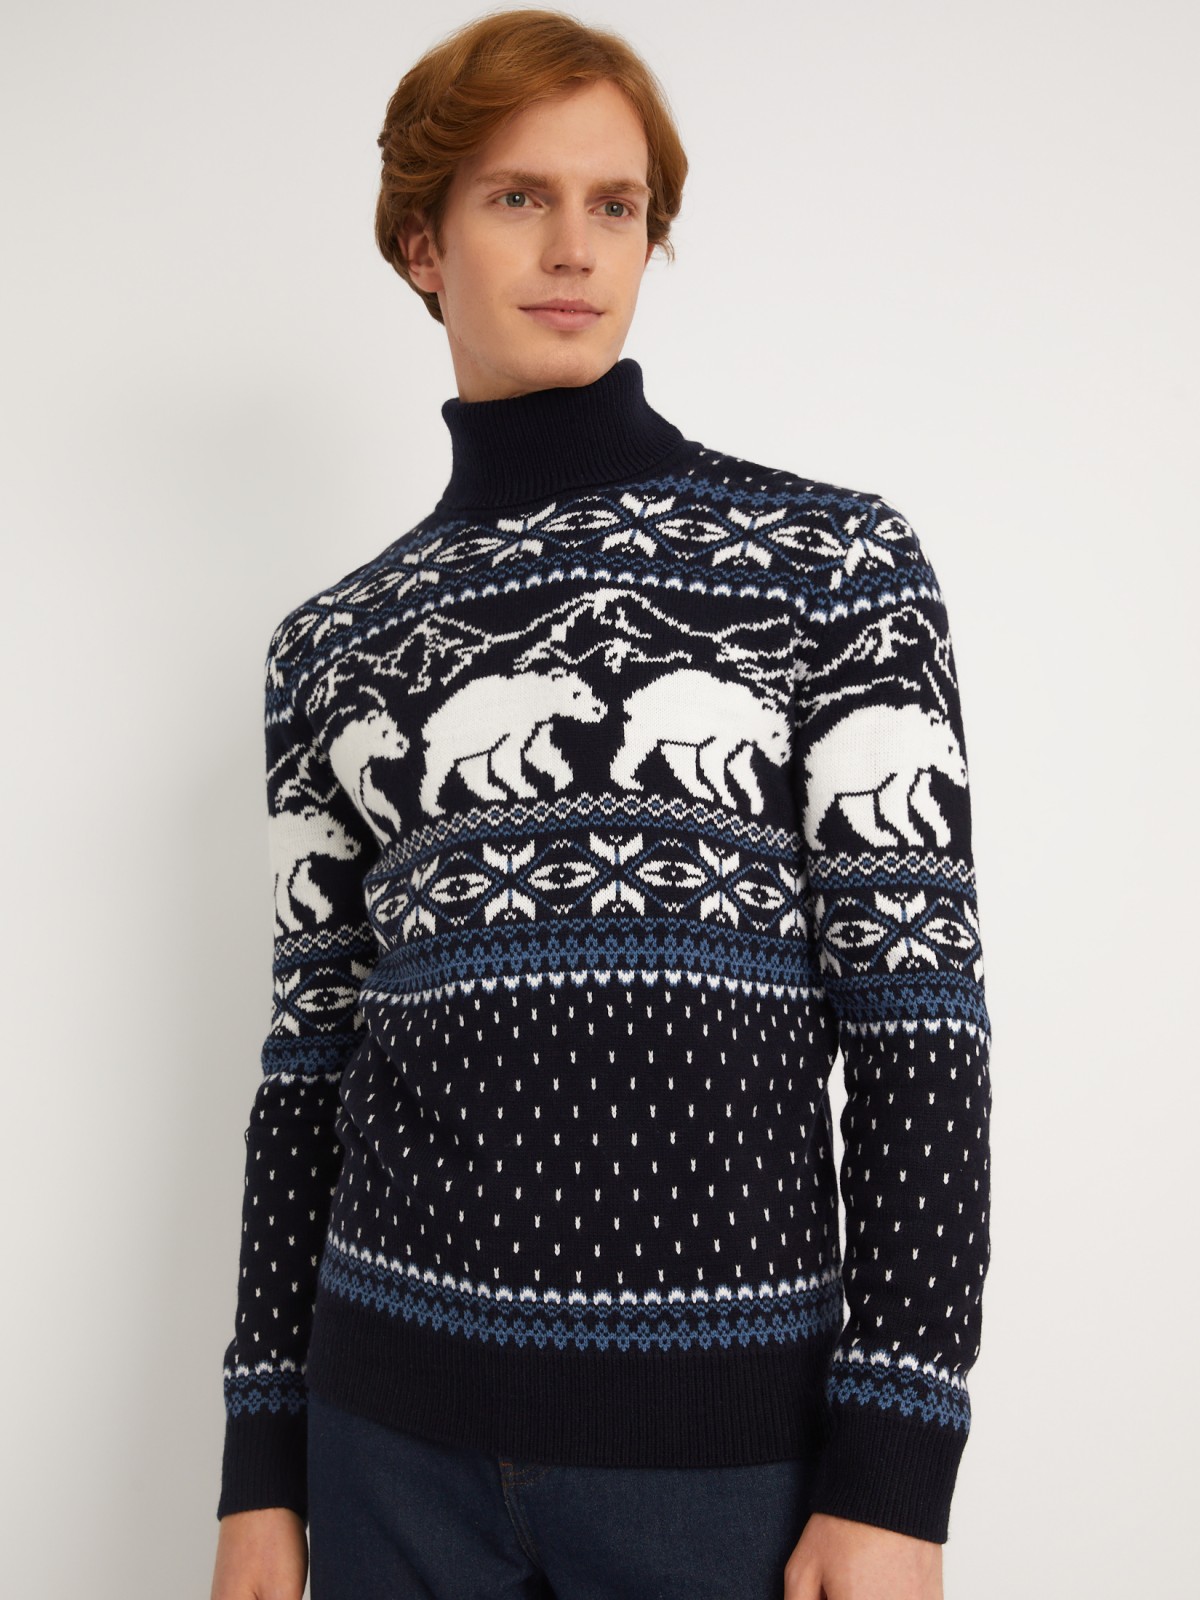 Вязаный свитер из акрила со скандинавским узором